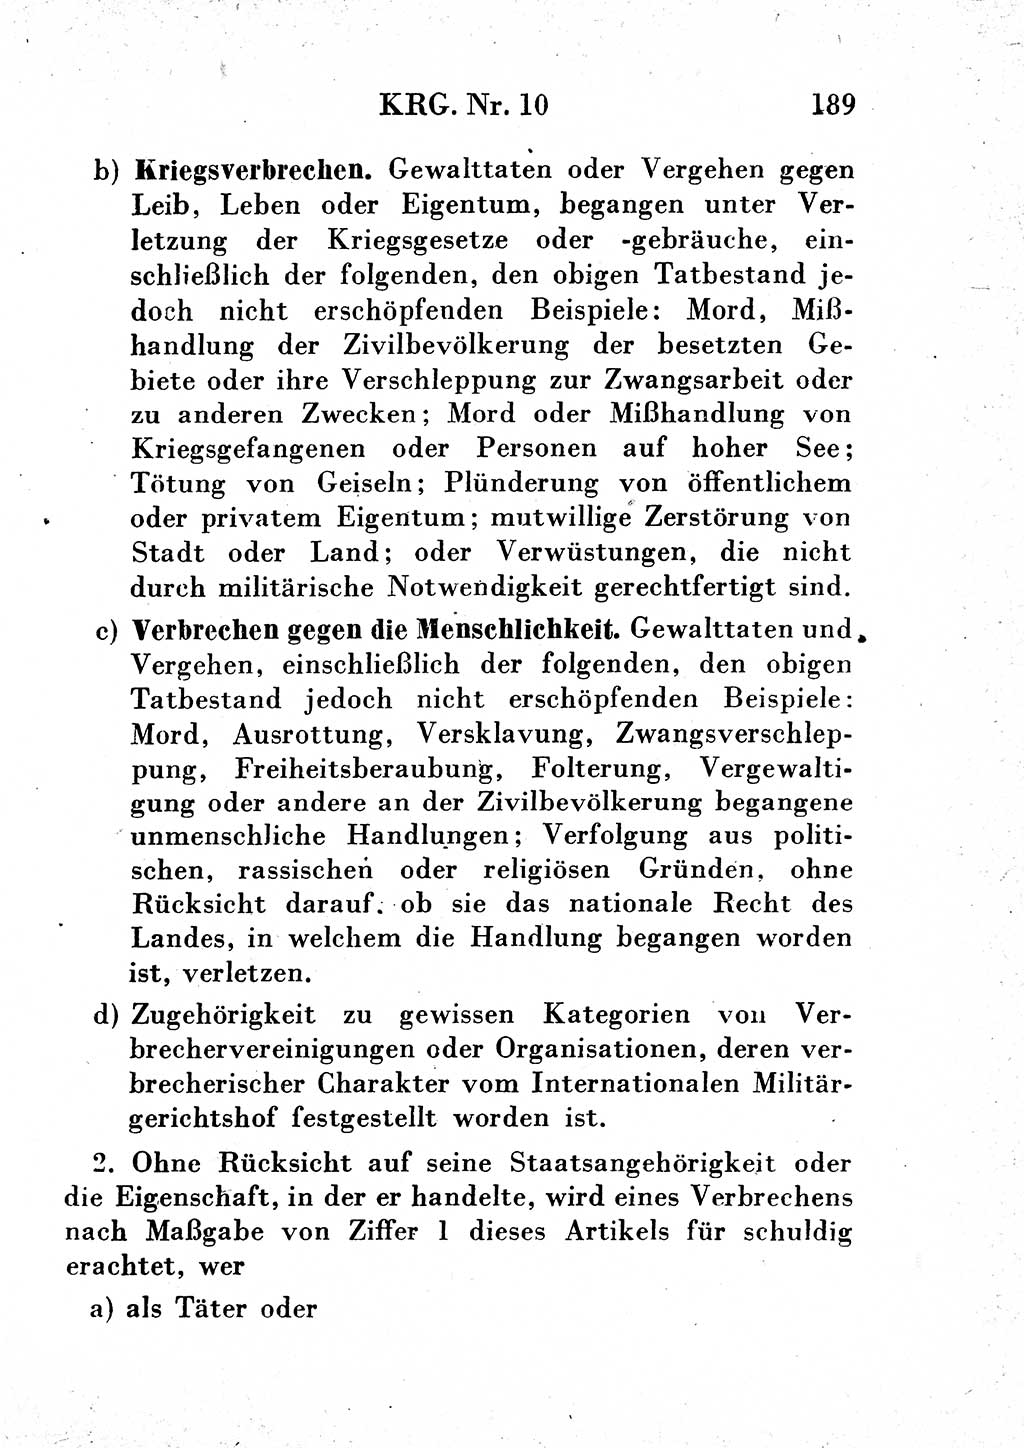 Strafgesetzbuch (StGB) und andere Strafgesetze [Deutsche Demokratische Republik (DDR)] 1954, Seite 189 (StGB Strafges. DDR 1954, S. 189)